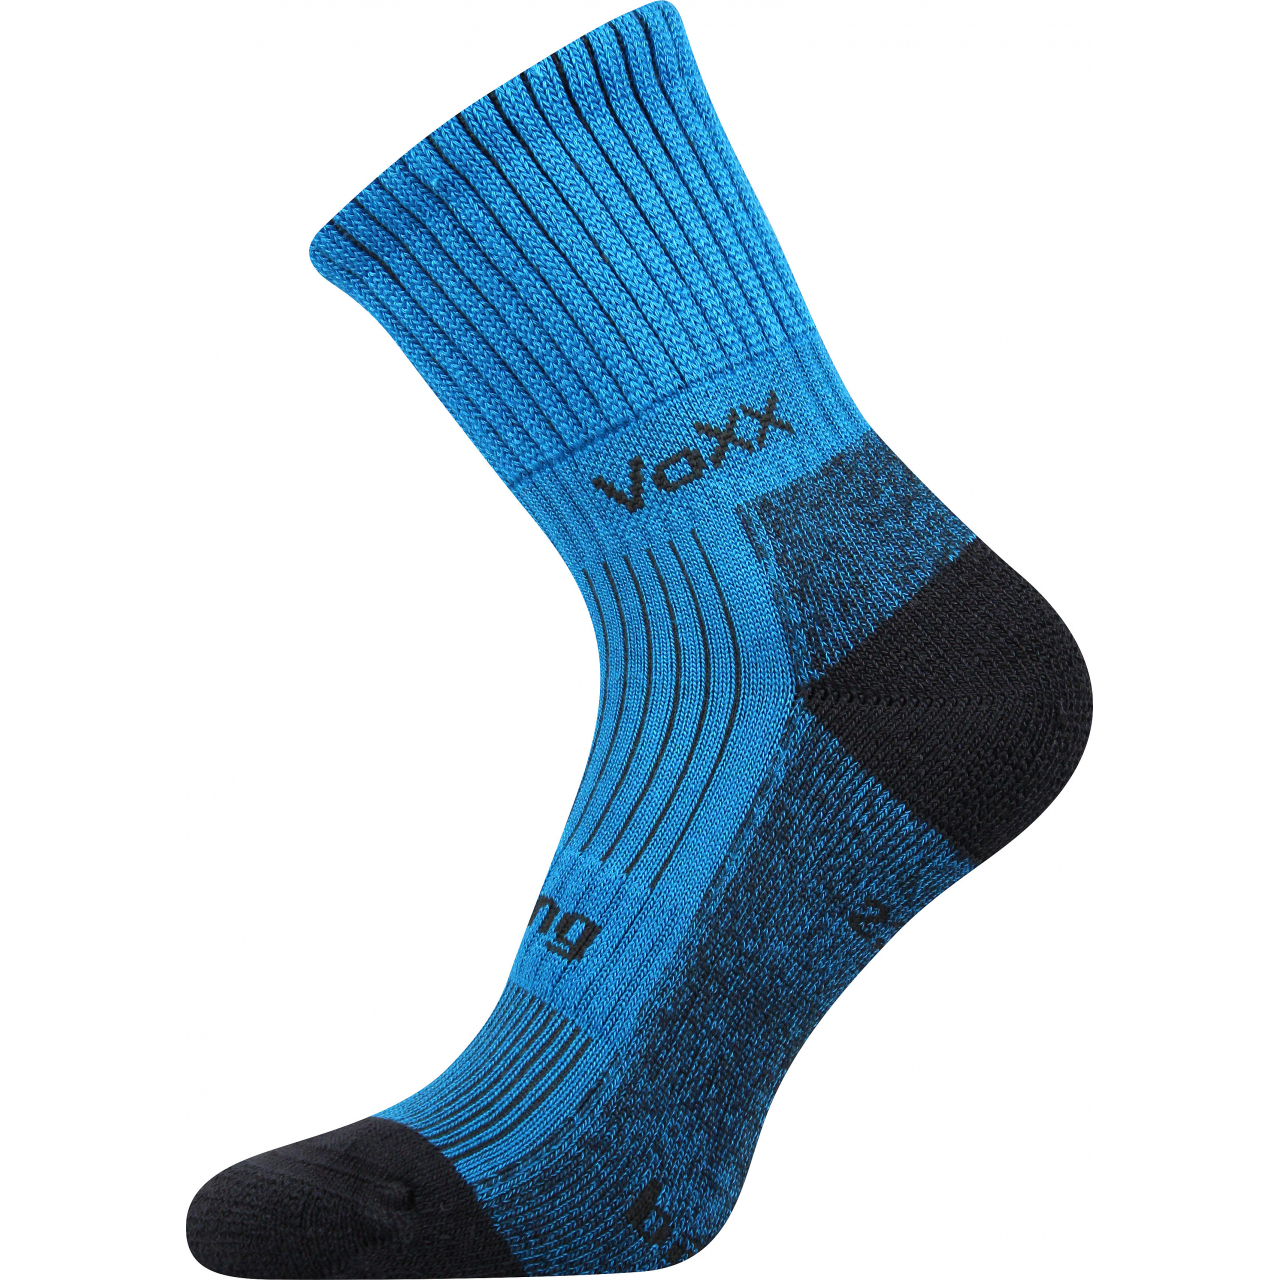 Ponožky sportovní unisex Voxx Bomber - modré, 43-46